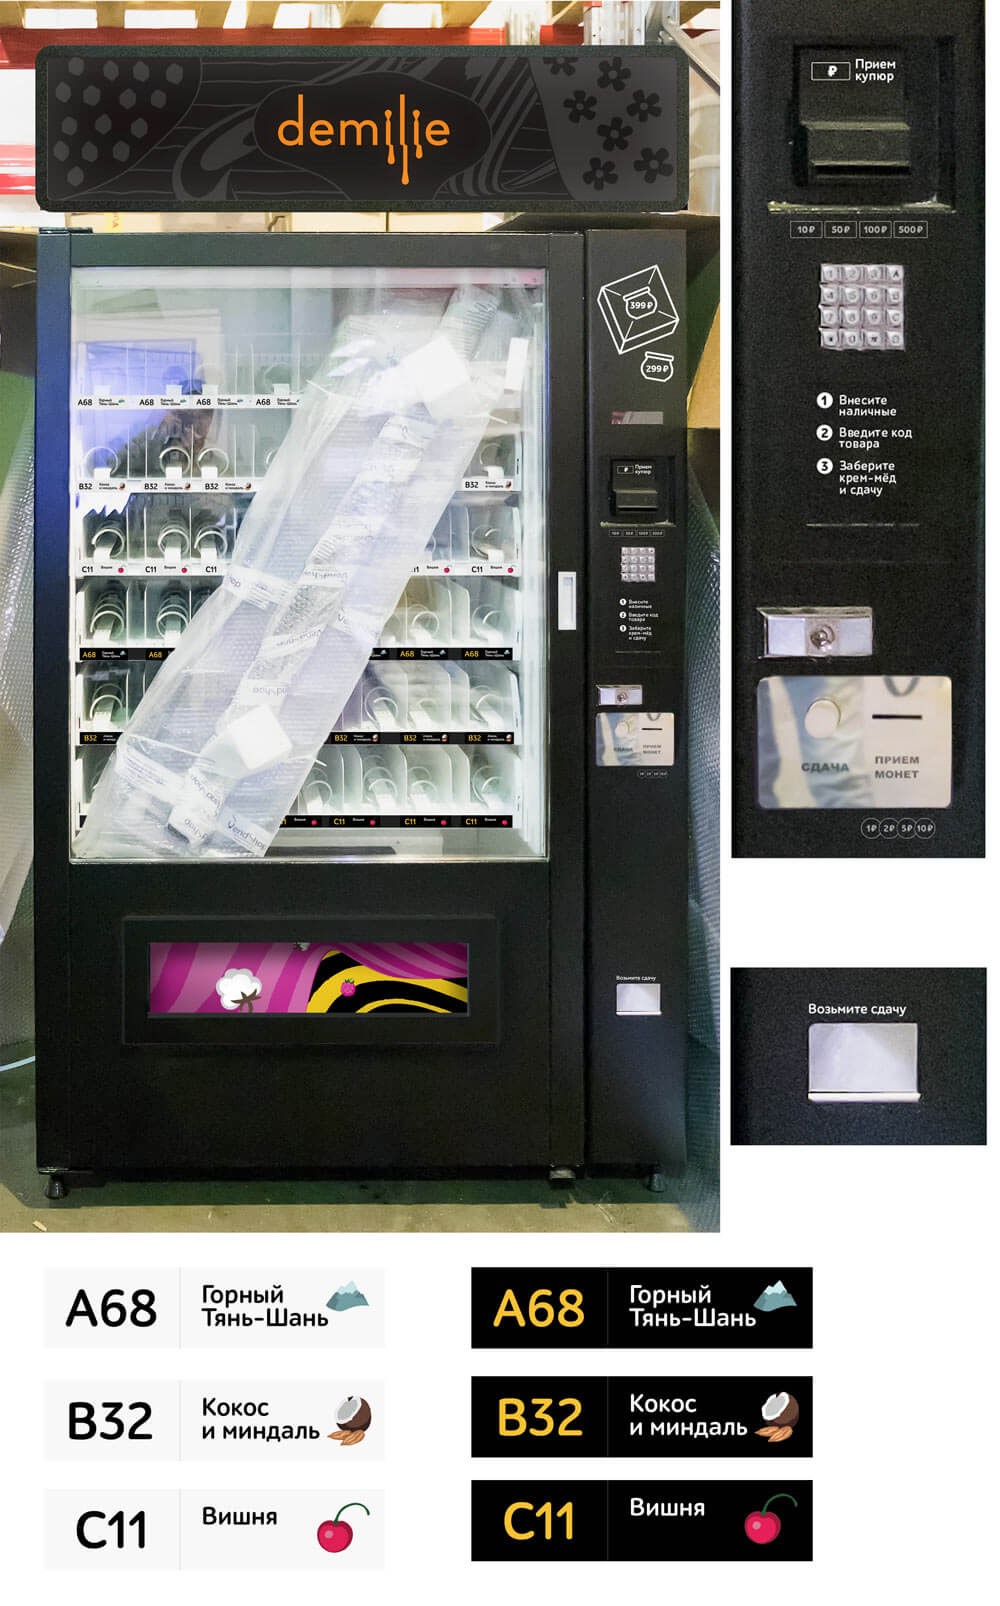 demilie vending process 08